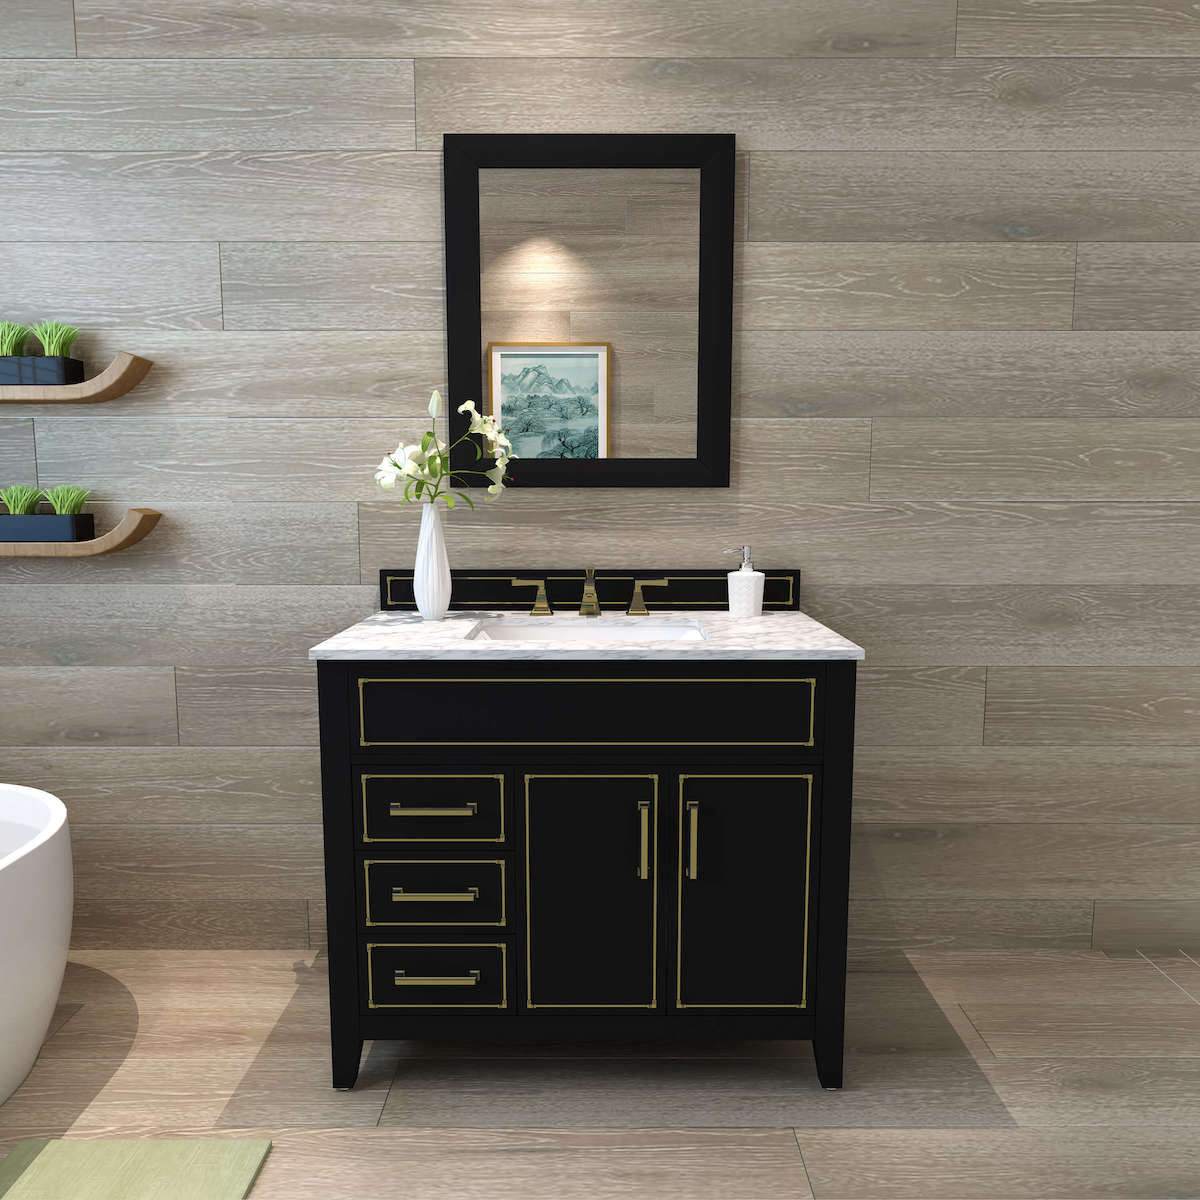 Ancerre Designs Black Onyx Aspen 36” Single Vanity VTS-ASPEN-36-BO-CW-GD in Bathroom